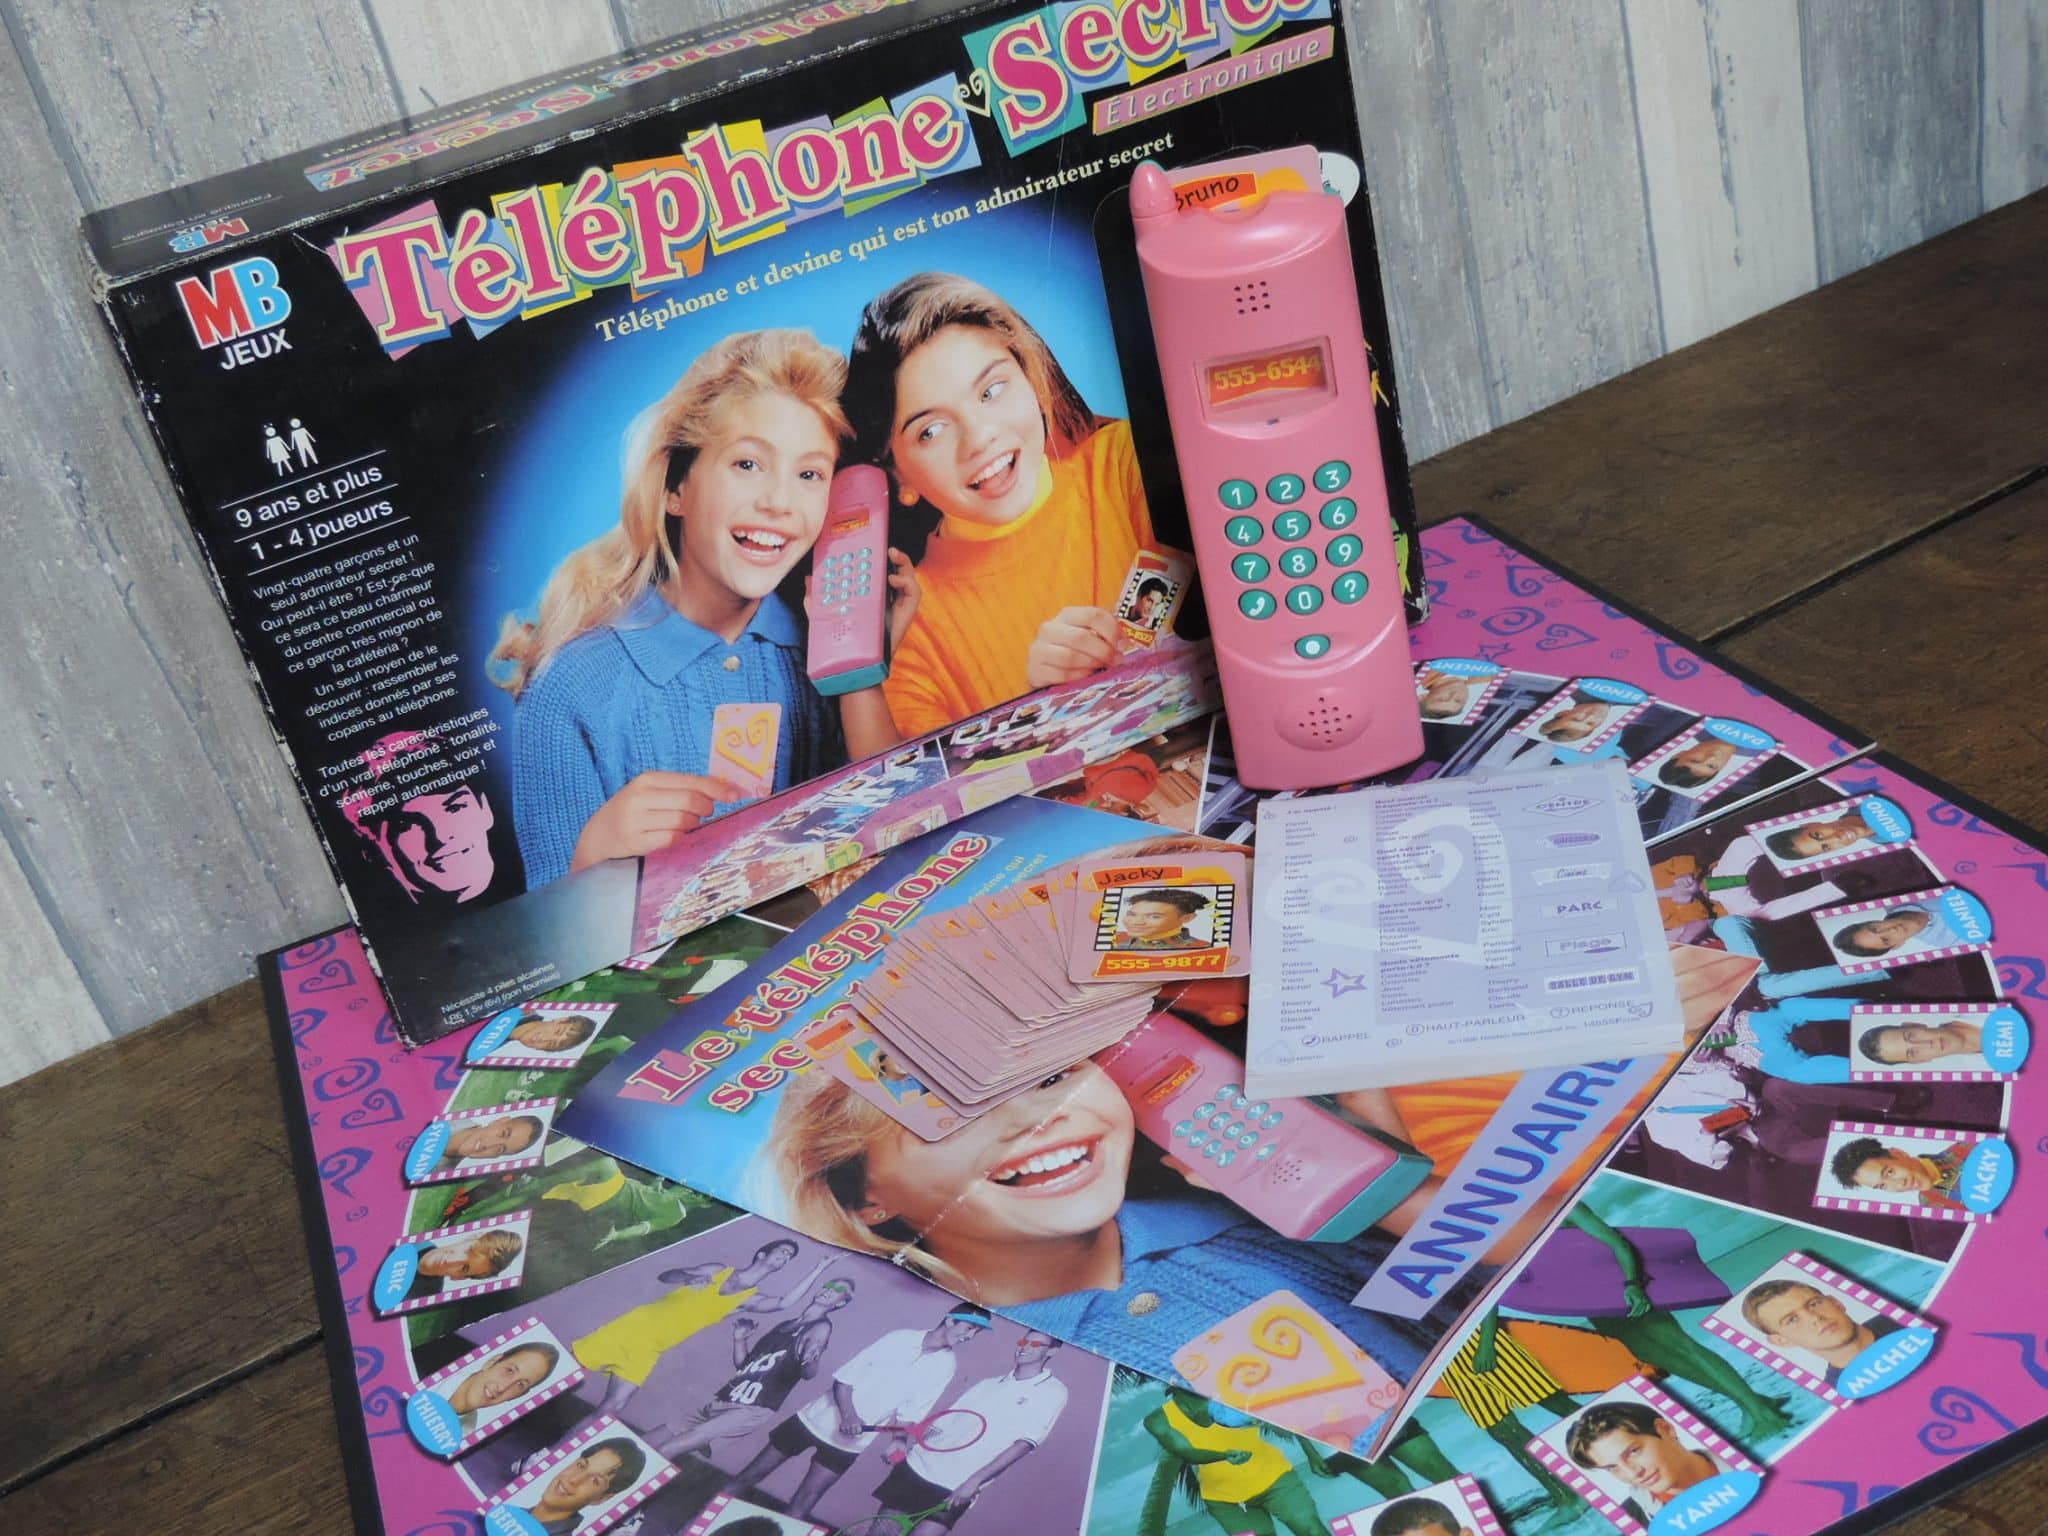 Téléphone Secret - Jeu MB 1996 - jouets rétro jeux de société